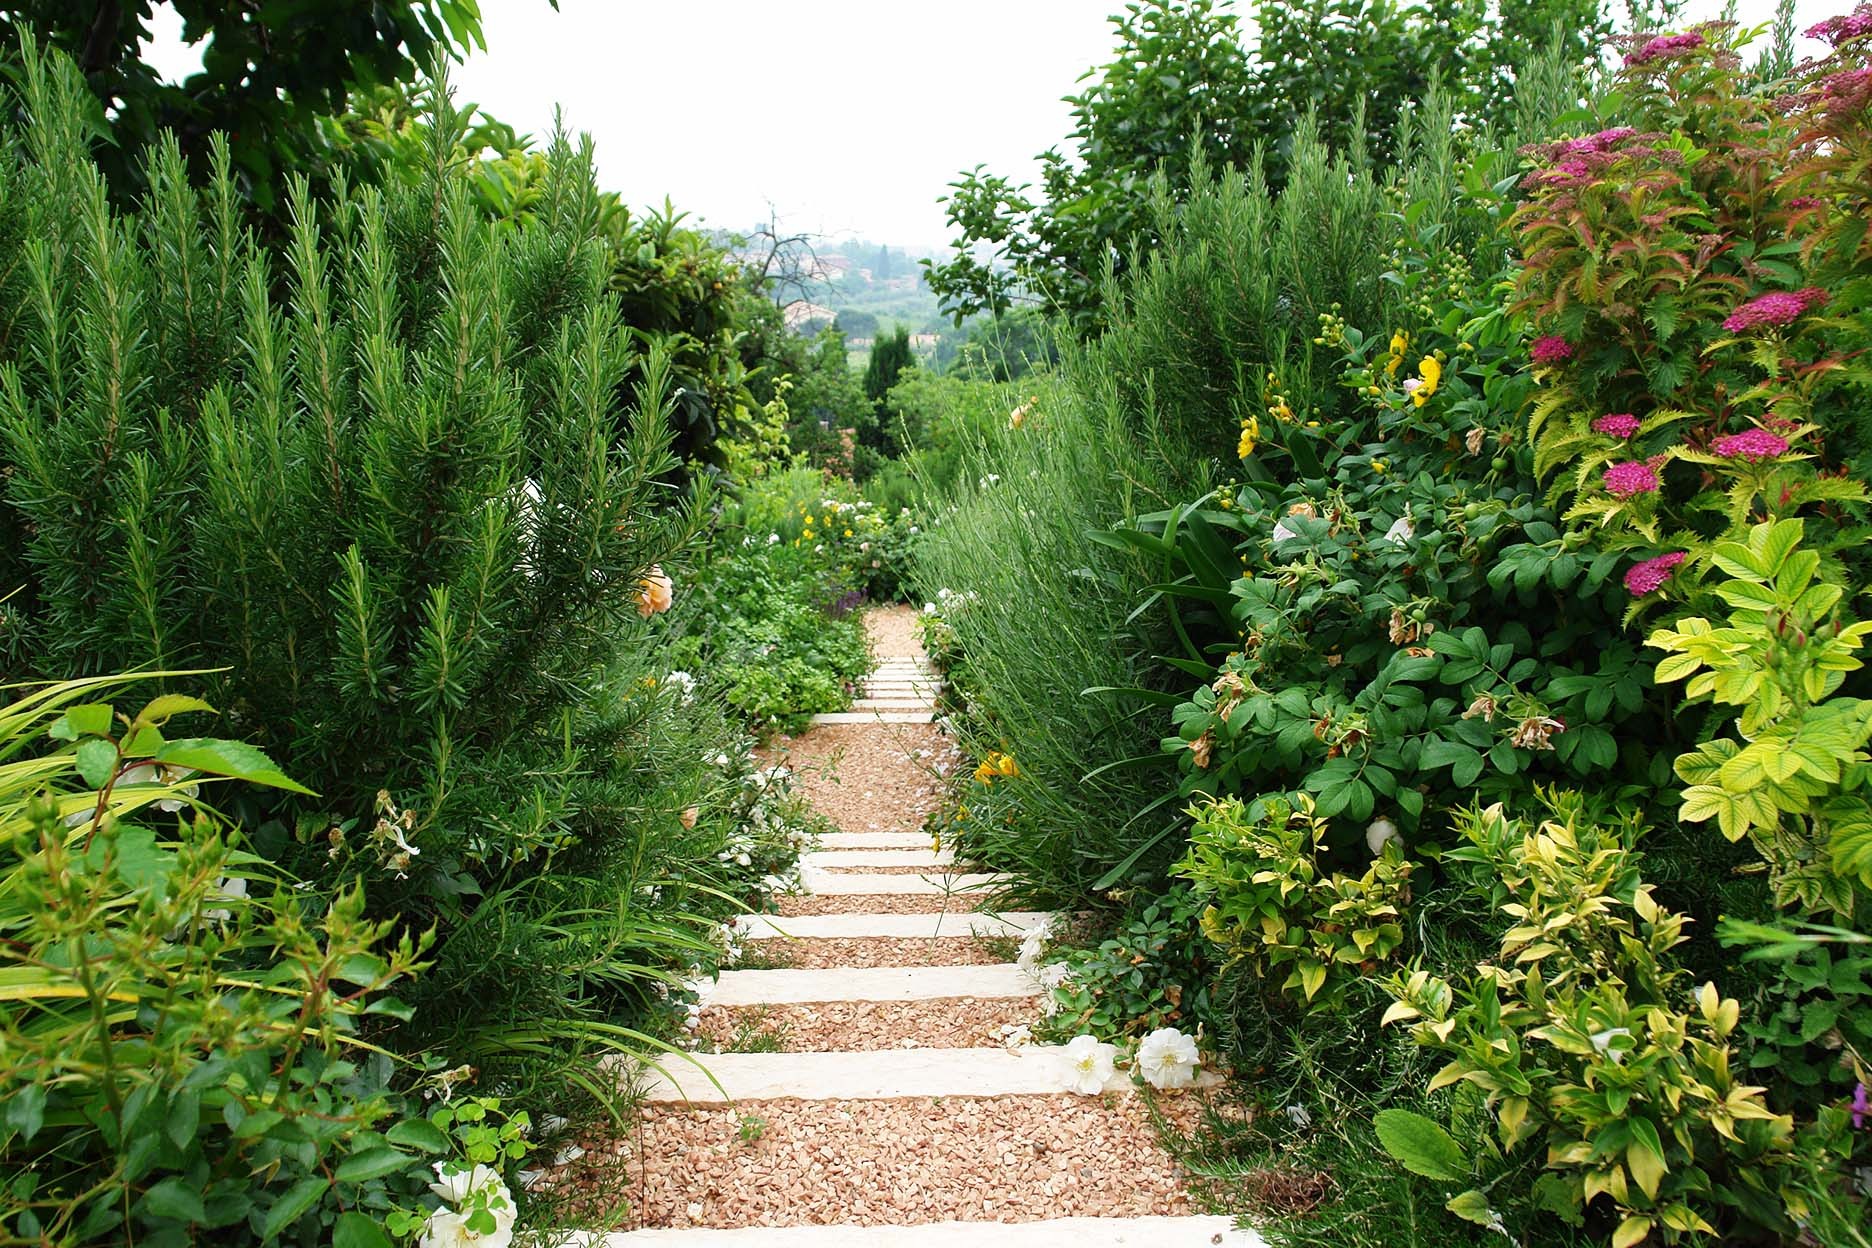 Mediterranean whiteness - Gardens